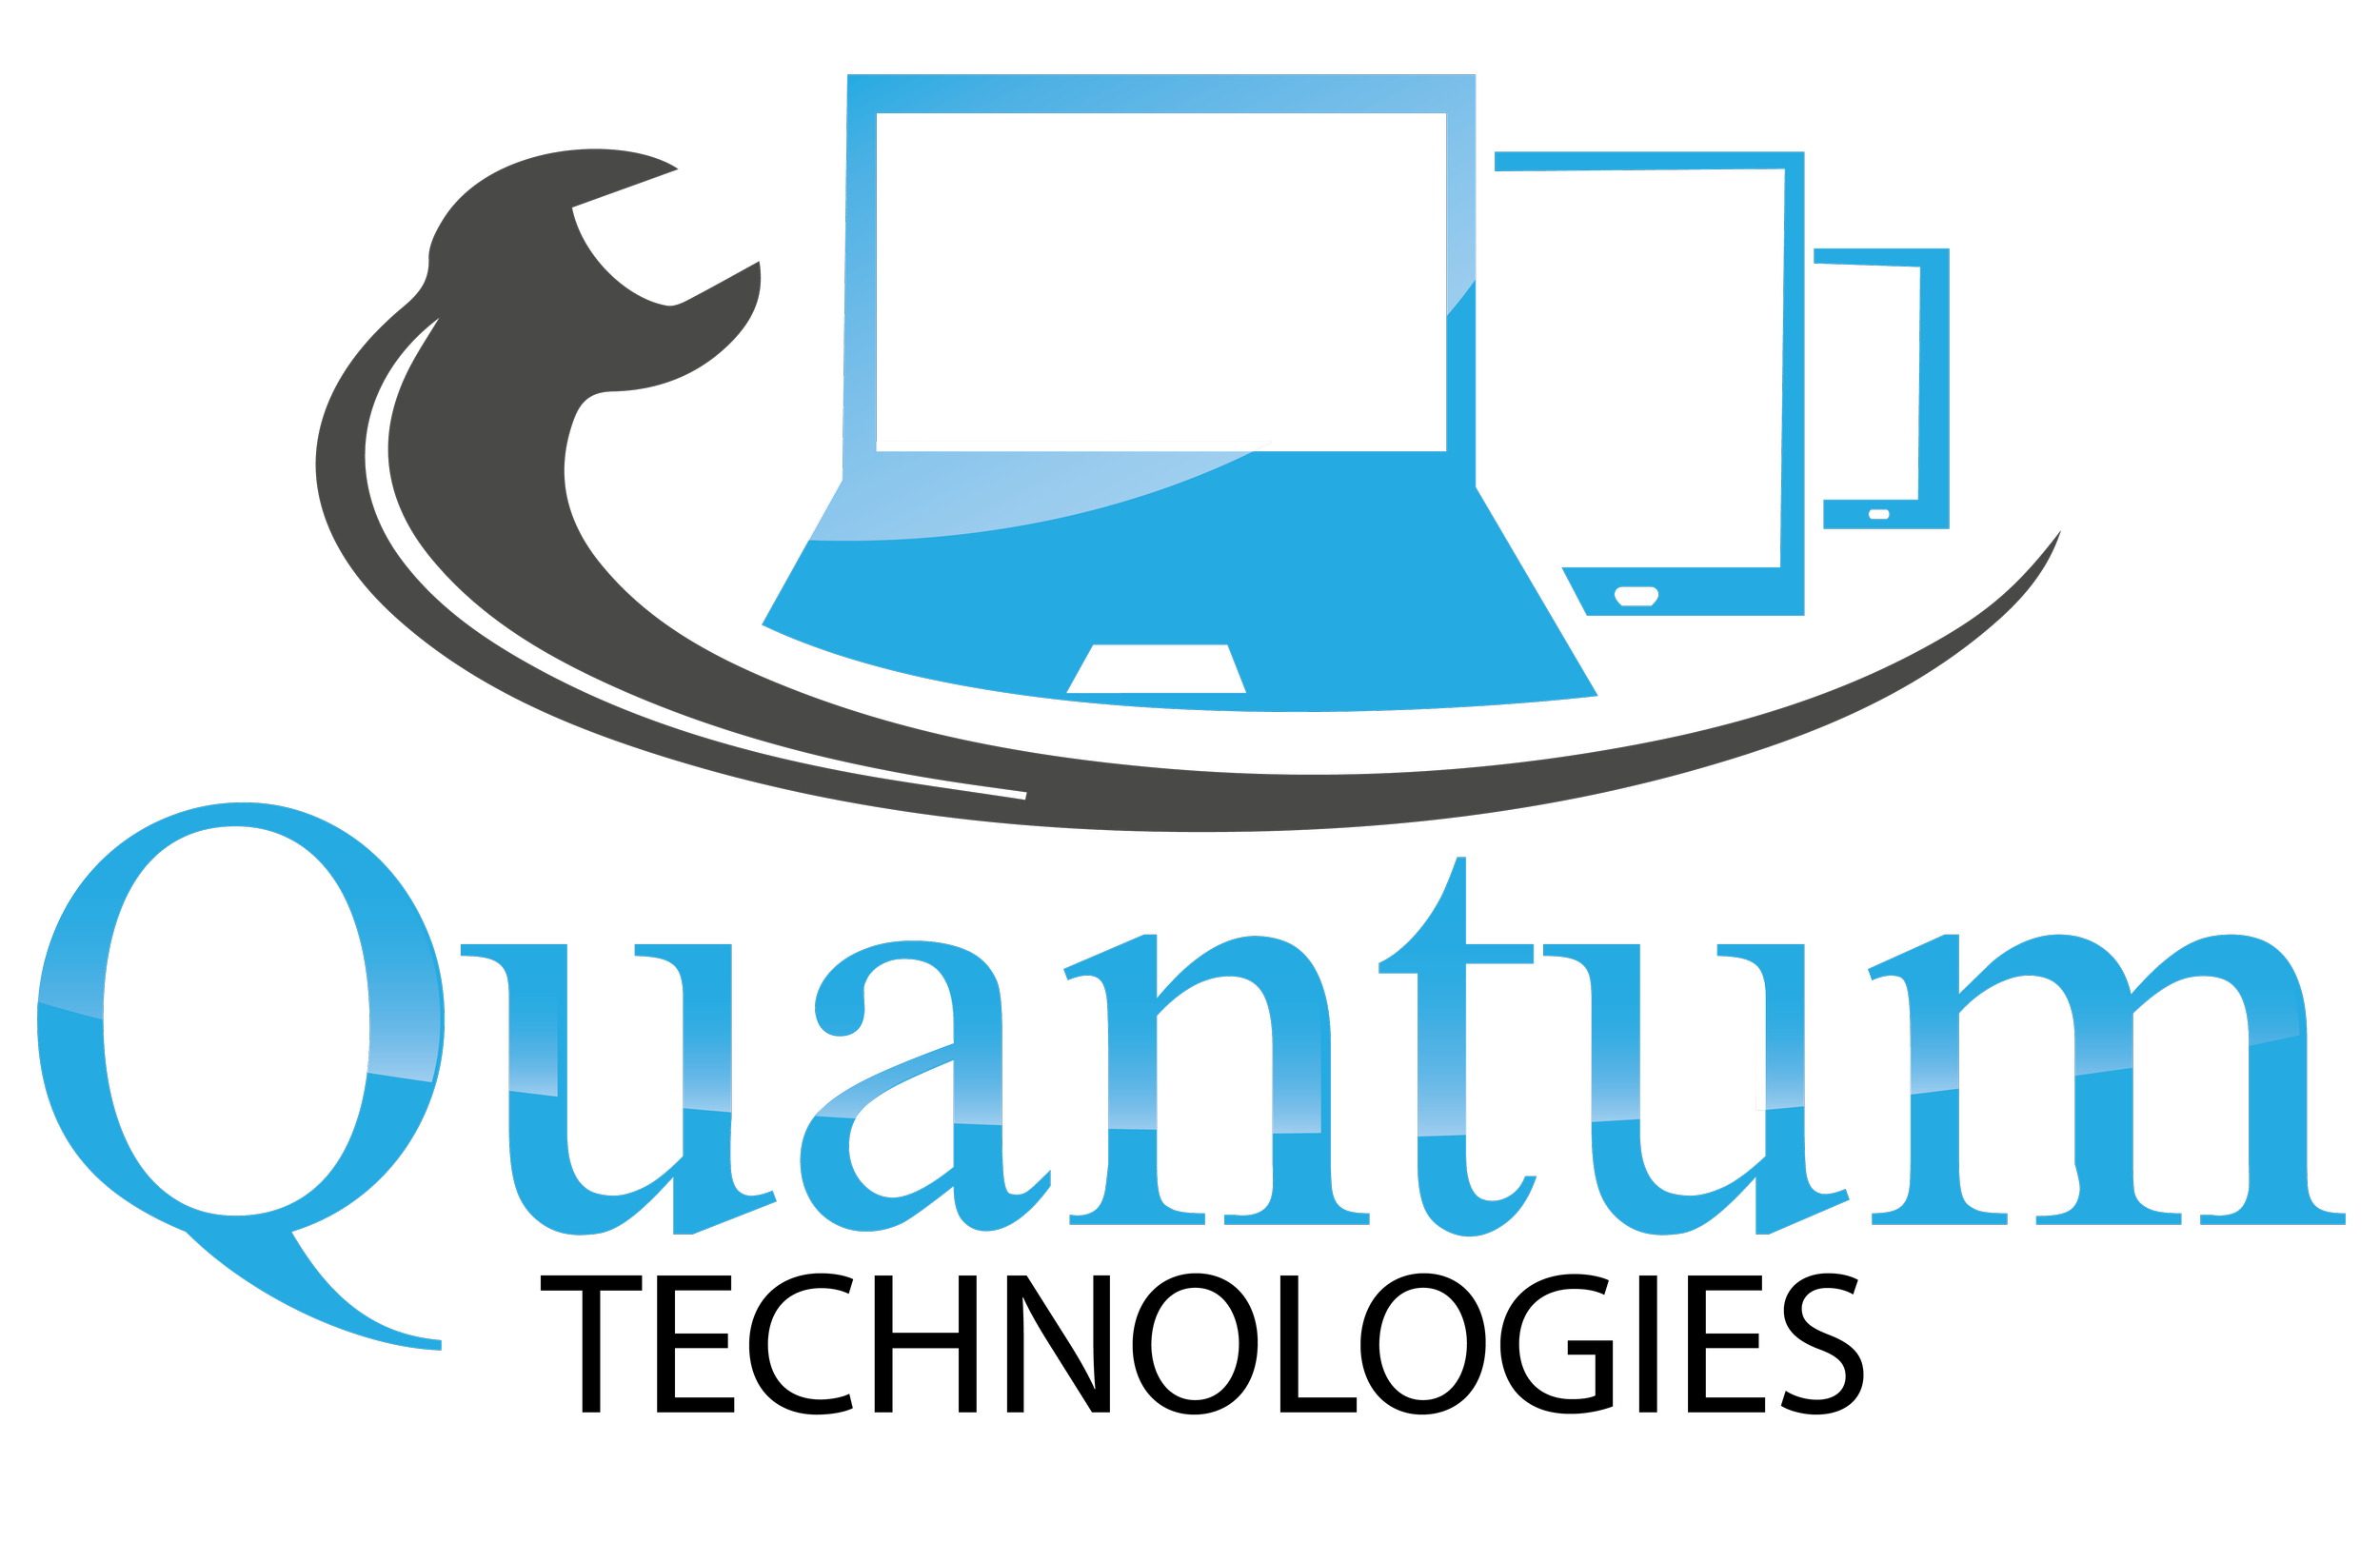 Quantum Technologies